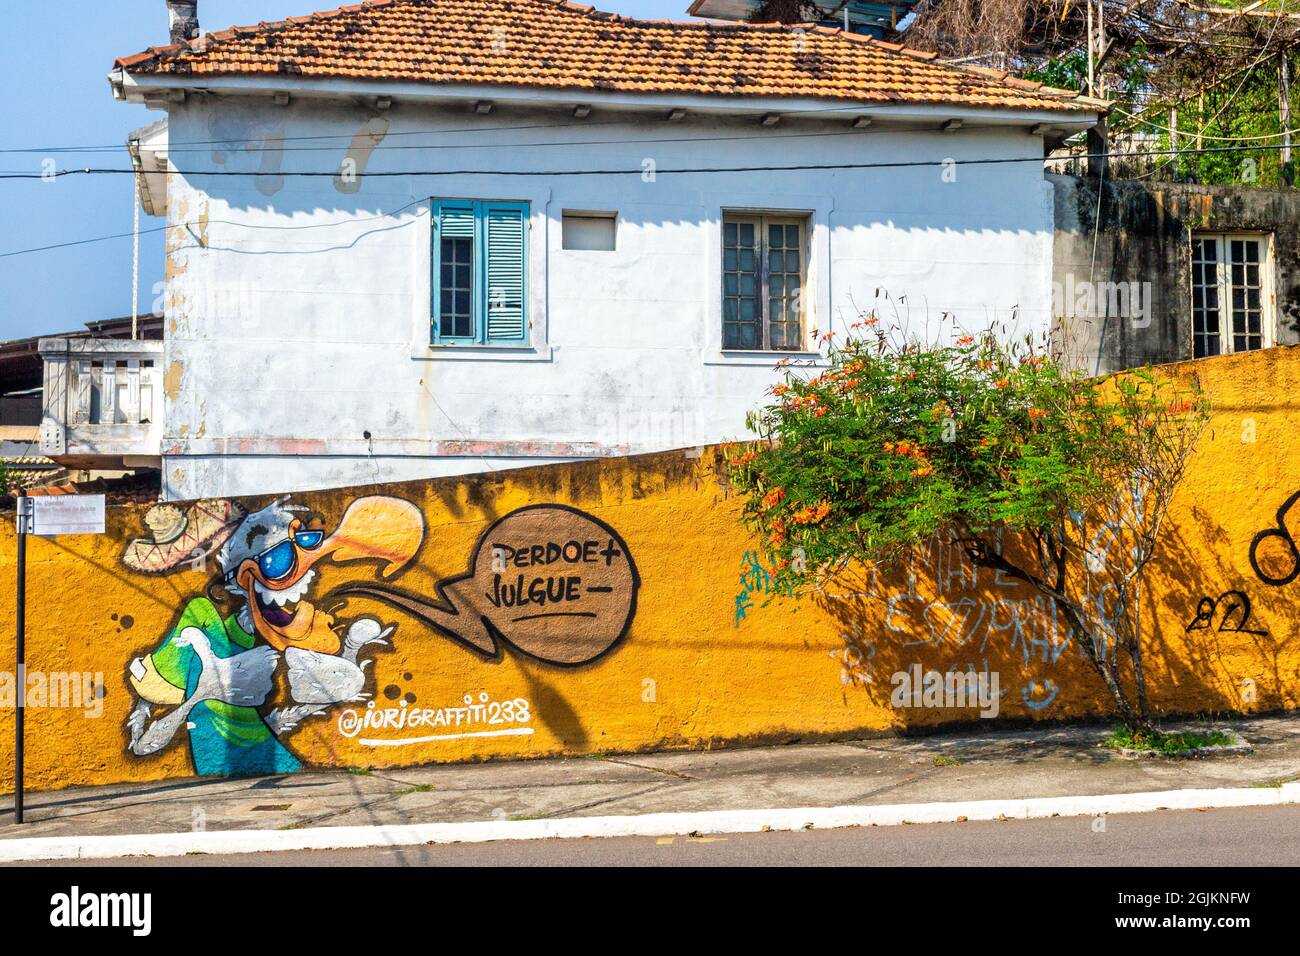 Un graffiti de rue lisant 'pardonner +, juge -. L'art de la rue a été vu à Niteroi, Rio de Janeiro, Brésil Banque D'Images